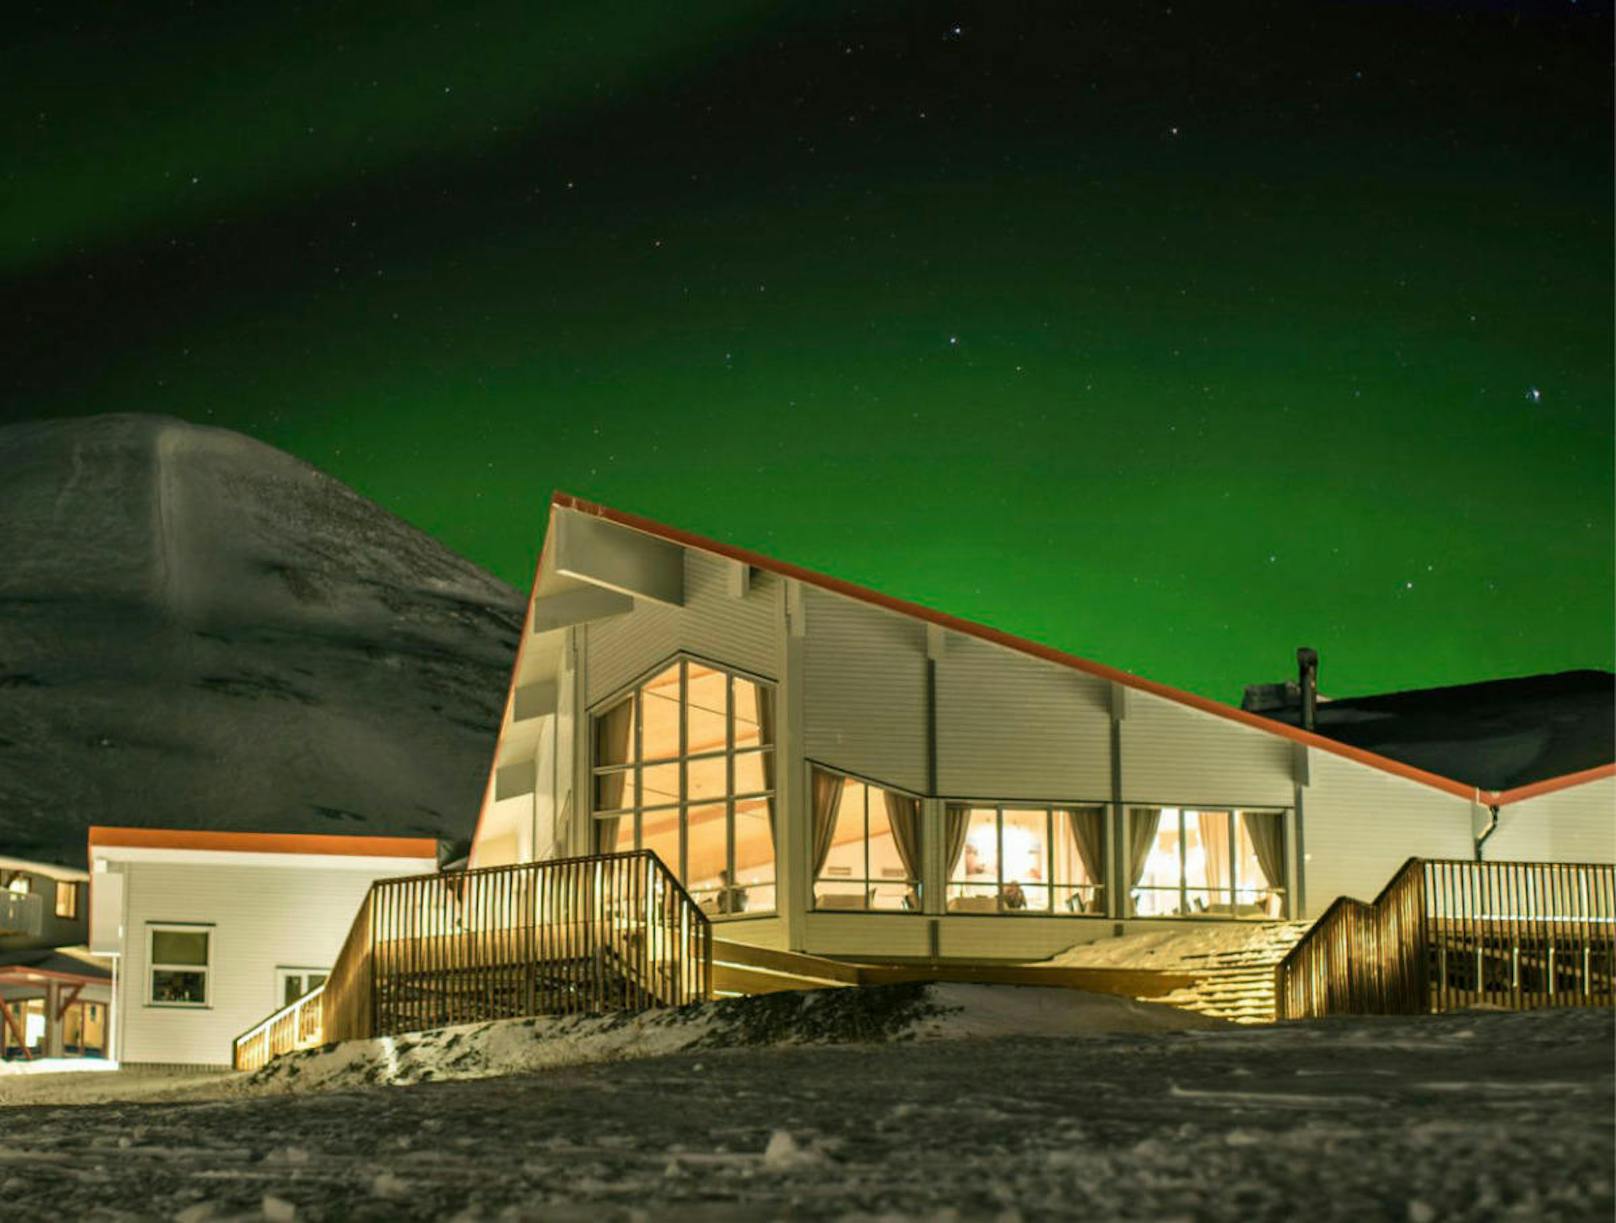 Natürlich darf in dieser Liste auch das nördlichste Hotel der Welt nicht fehlen. Im Radisson Blu Polar Hotel in Longyearbyen auf Spitzbergen kann man die Nordlichter beim Nachtessen durch die riesigen Fenster des Restaurants beobachten. <a href="https://www.radissonblu.com/en/hotel-spitsbergen">www.radissonblu.com</a>